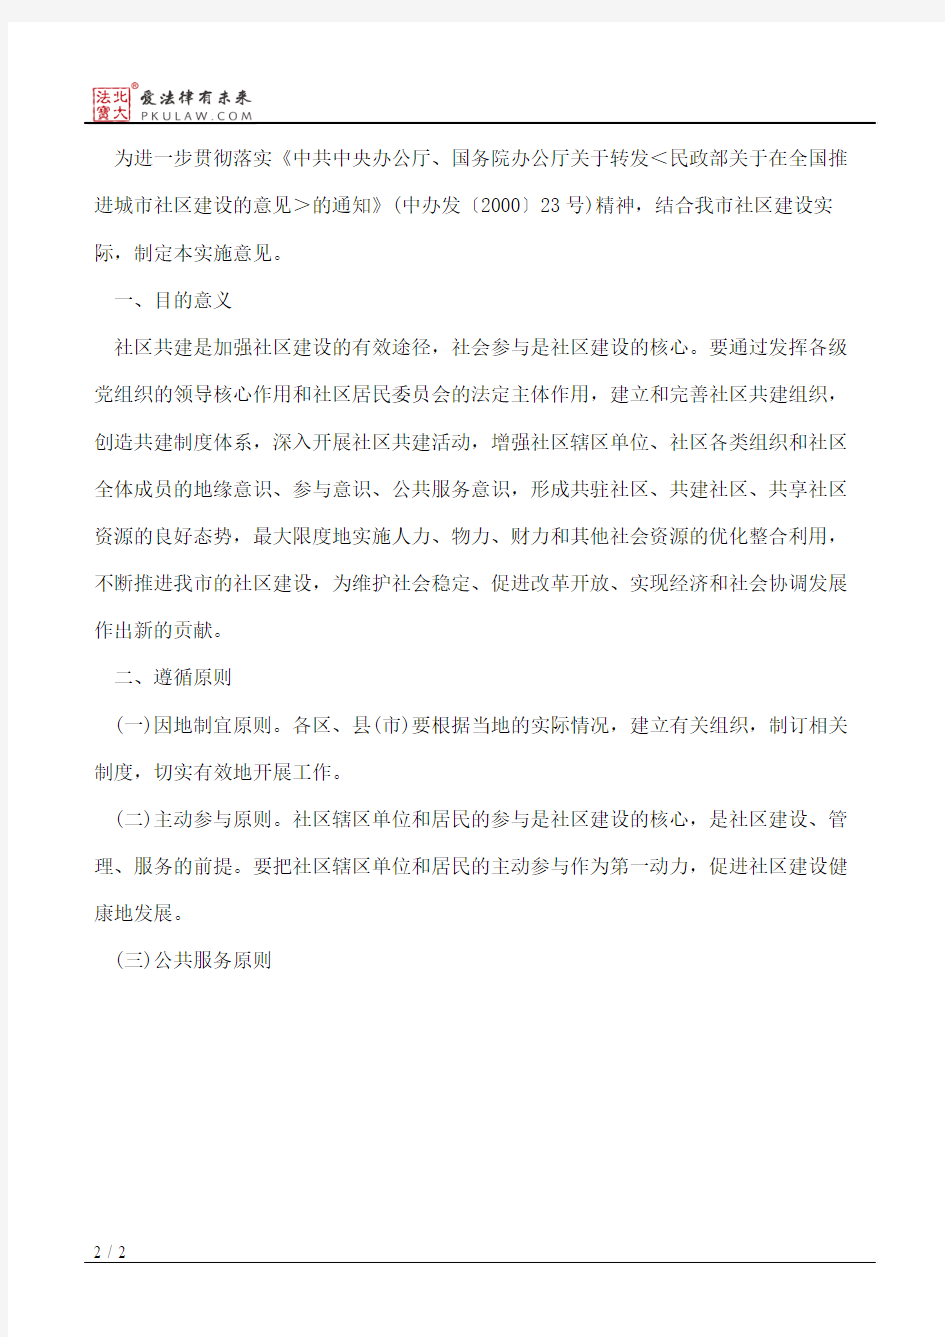 中共杭州市委办公厅、杭州市人民政府办公厅关于印发《杭州市社区